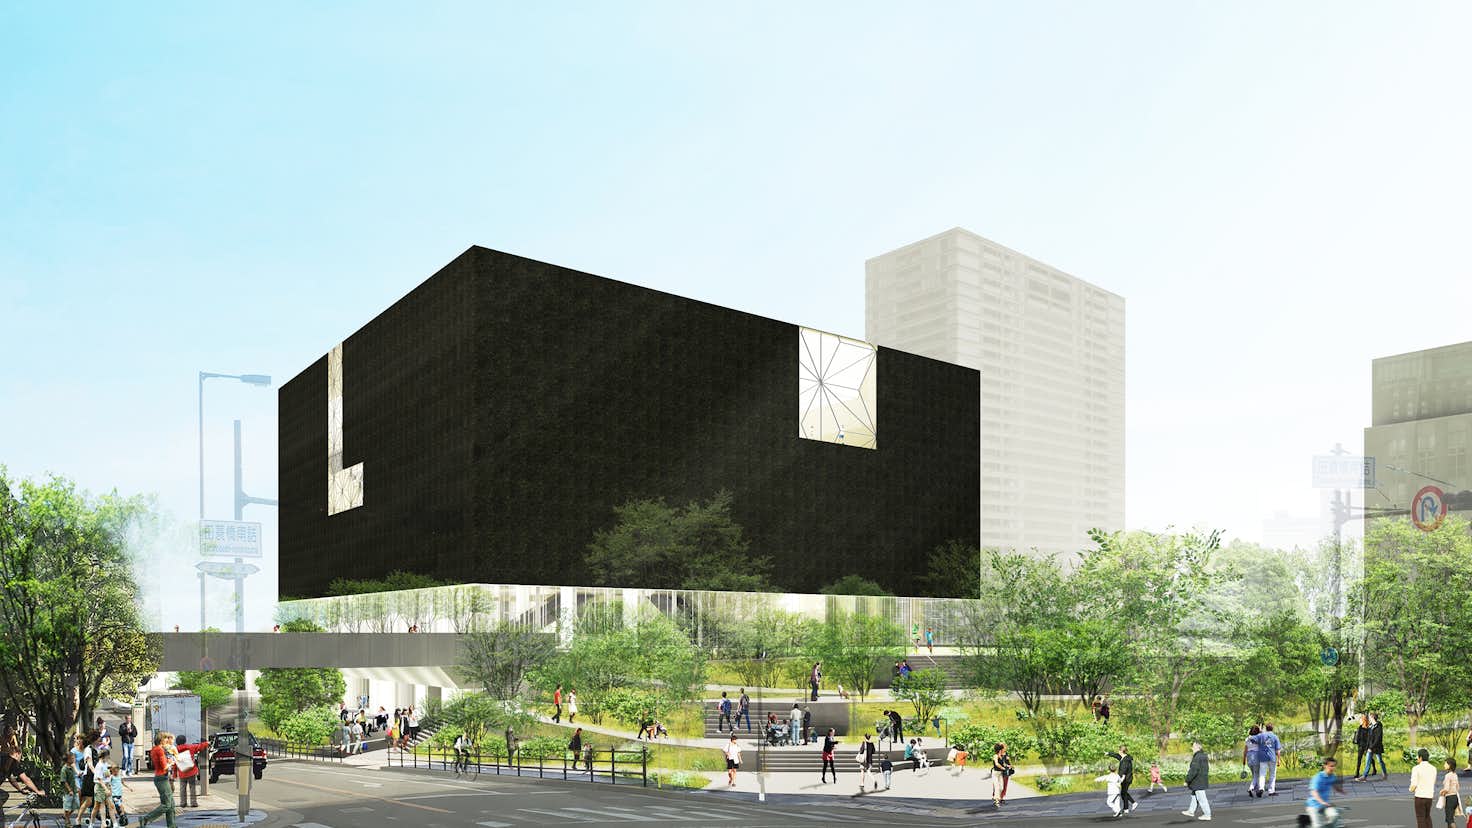 大阪市が21年度に開館予定の美術館の名称を募集中 新たな美術館の特徴と計画とは 美術手帖